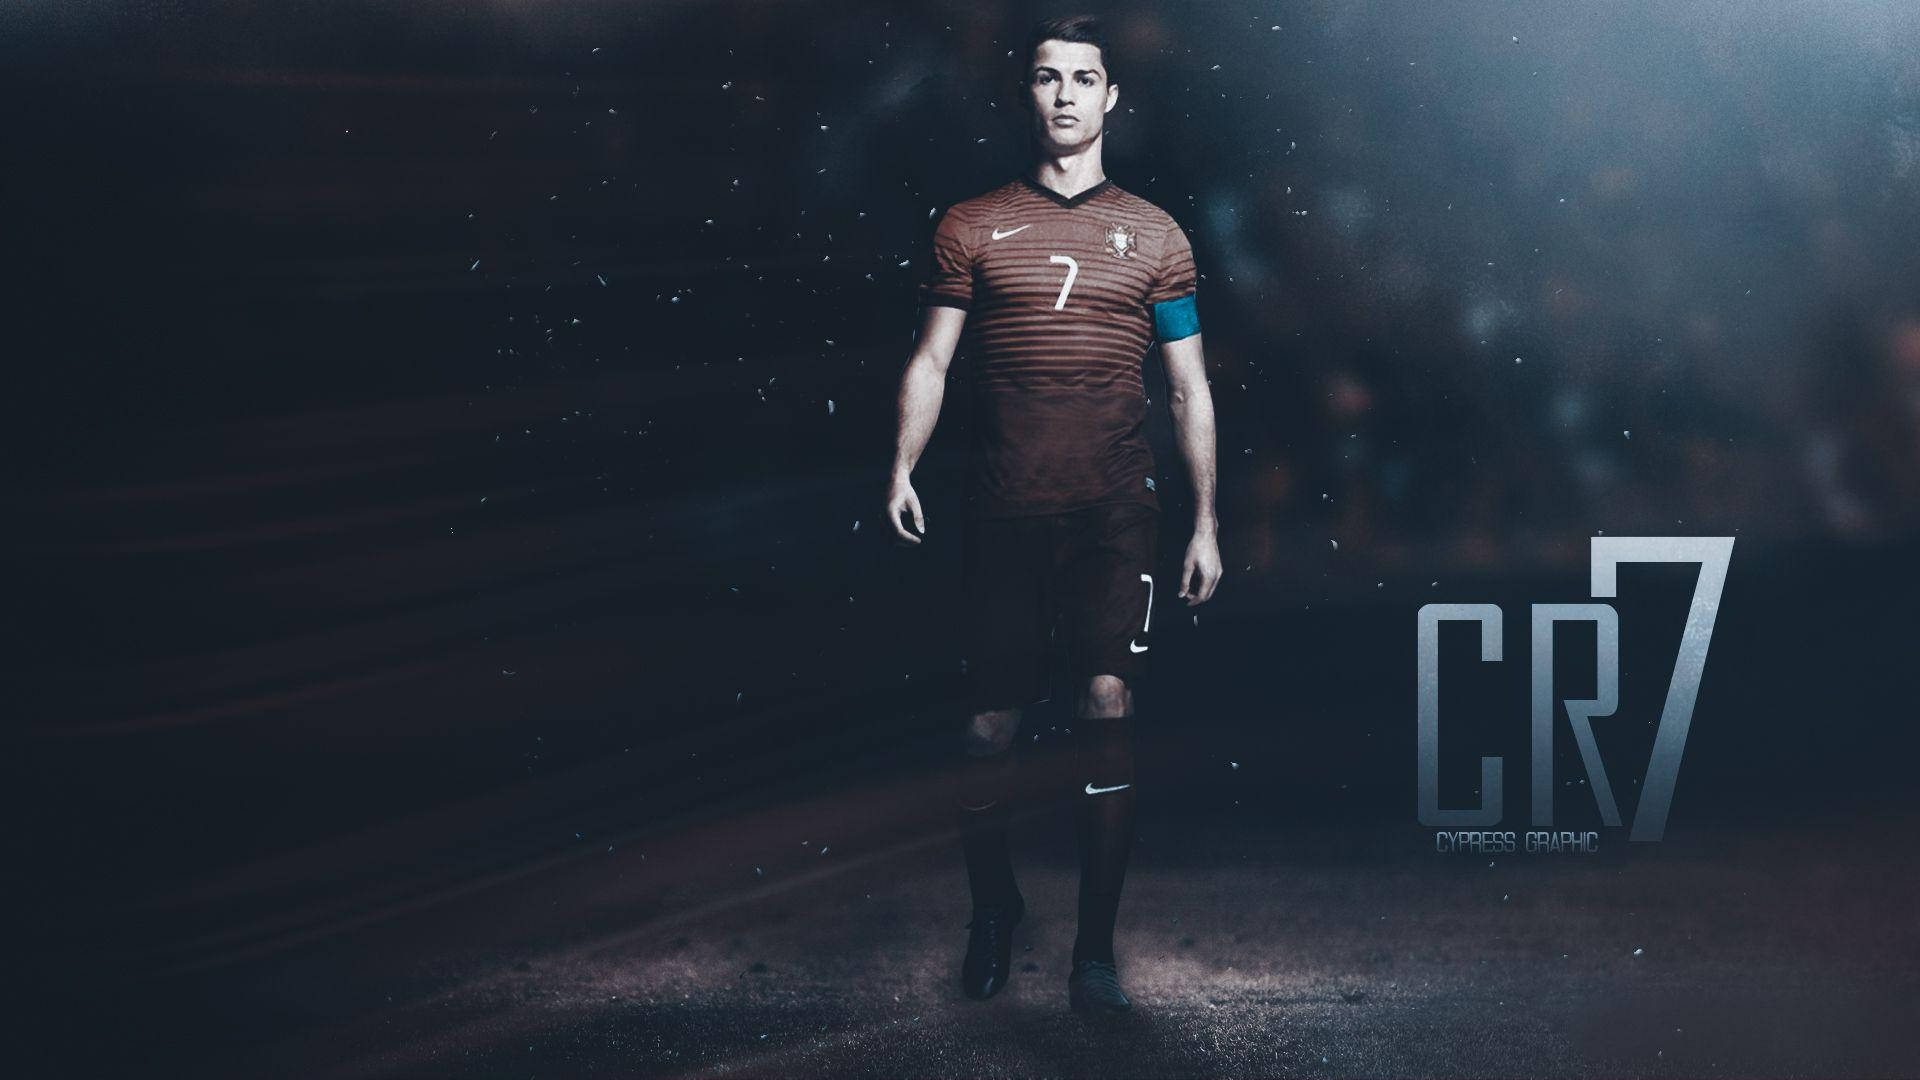 Cristiano Ronaldo in Portugal's red international uniform Wallpaper